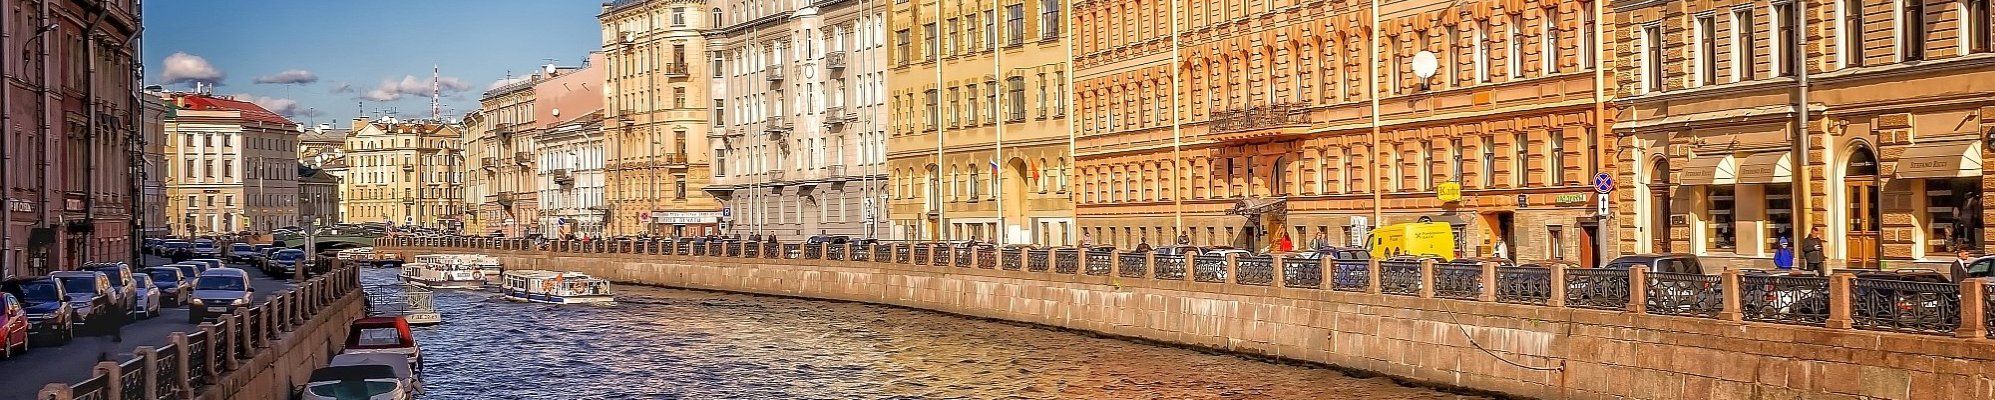 In St. Petersburg © Peter H auf Pixabay